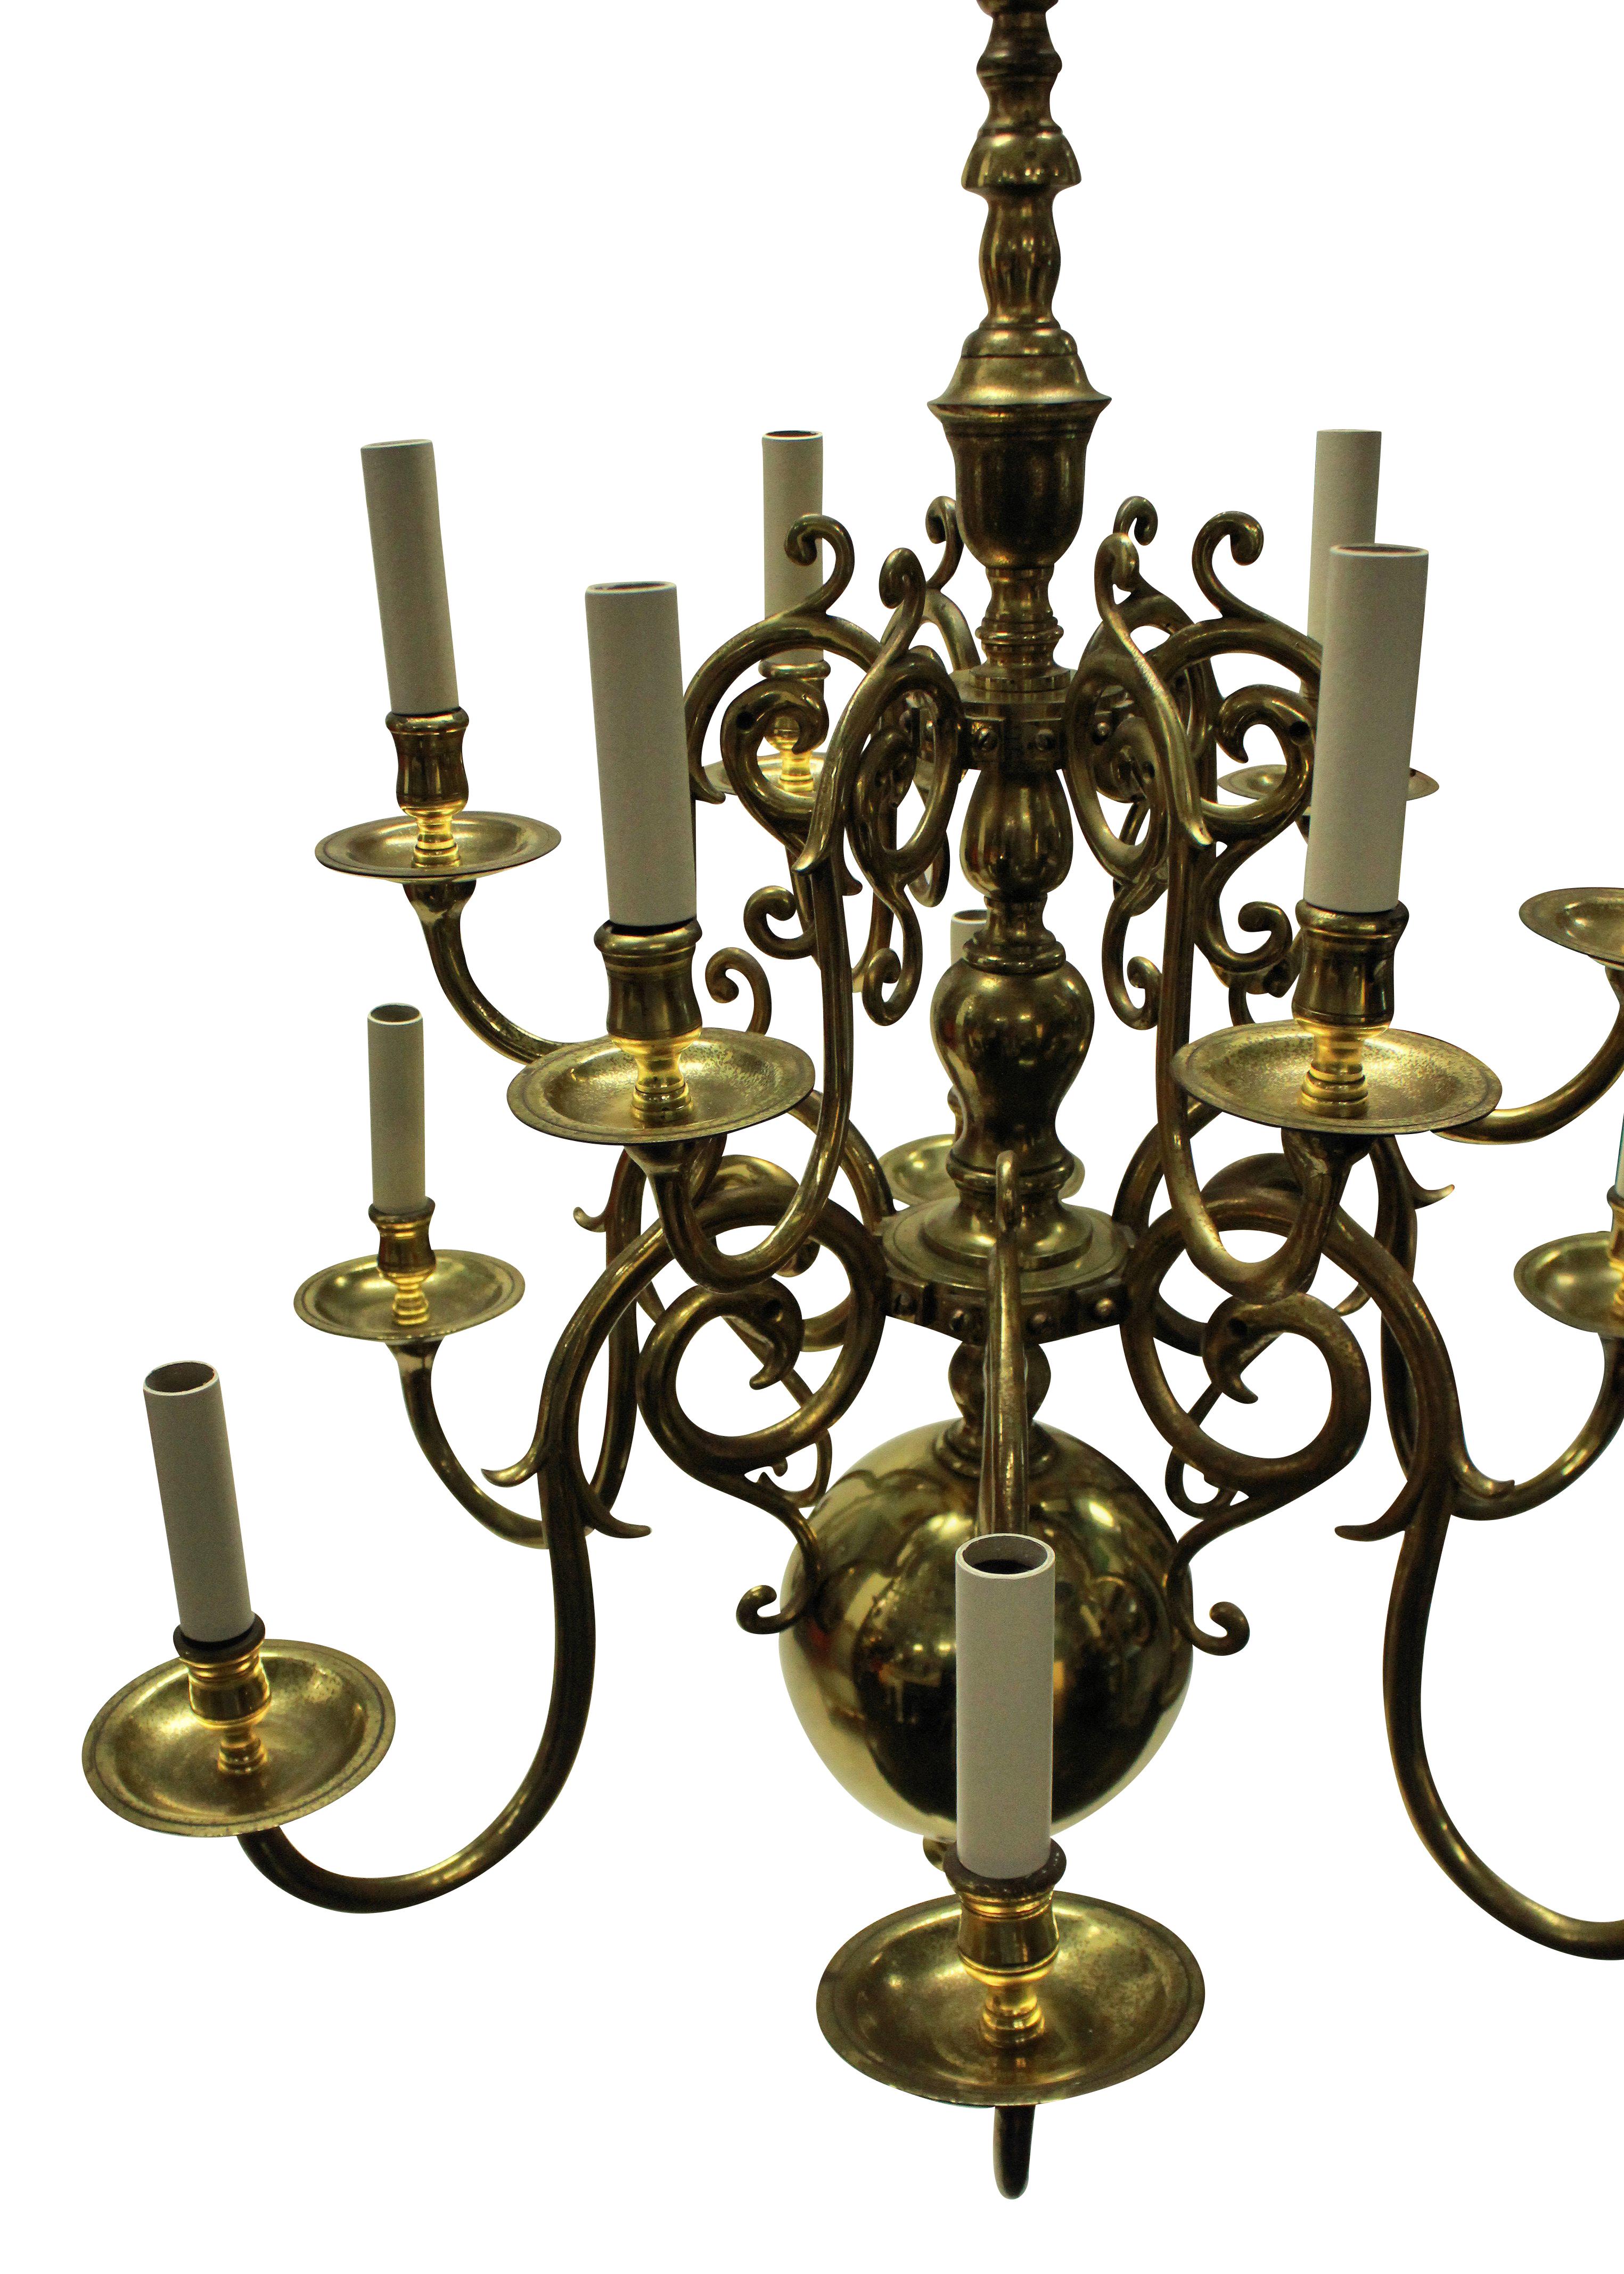 17th century chandelier